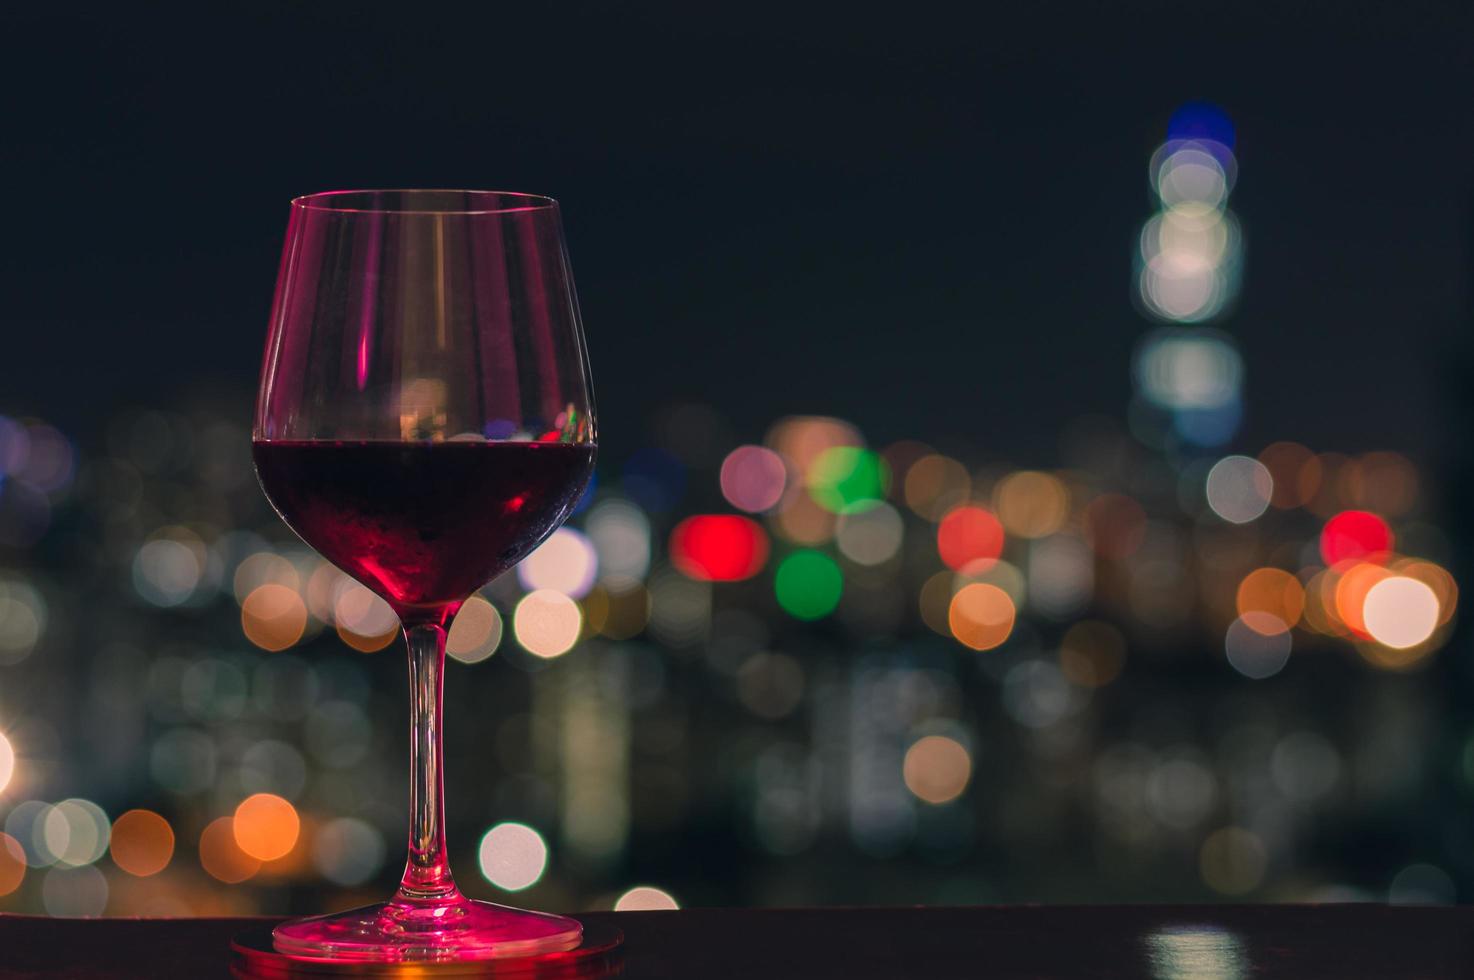 luz colorida brilha em um copo de vinho tinto foto